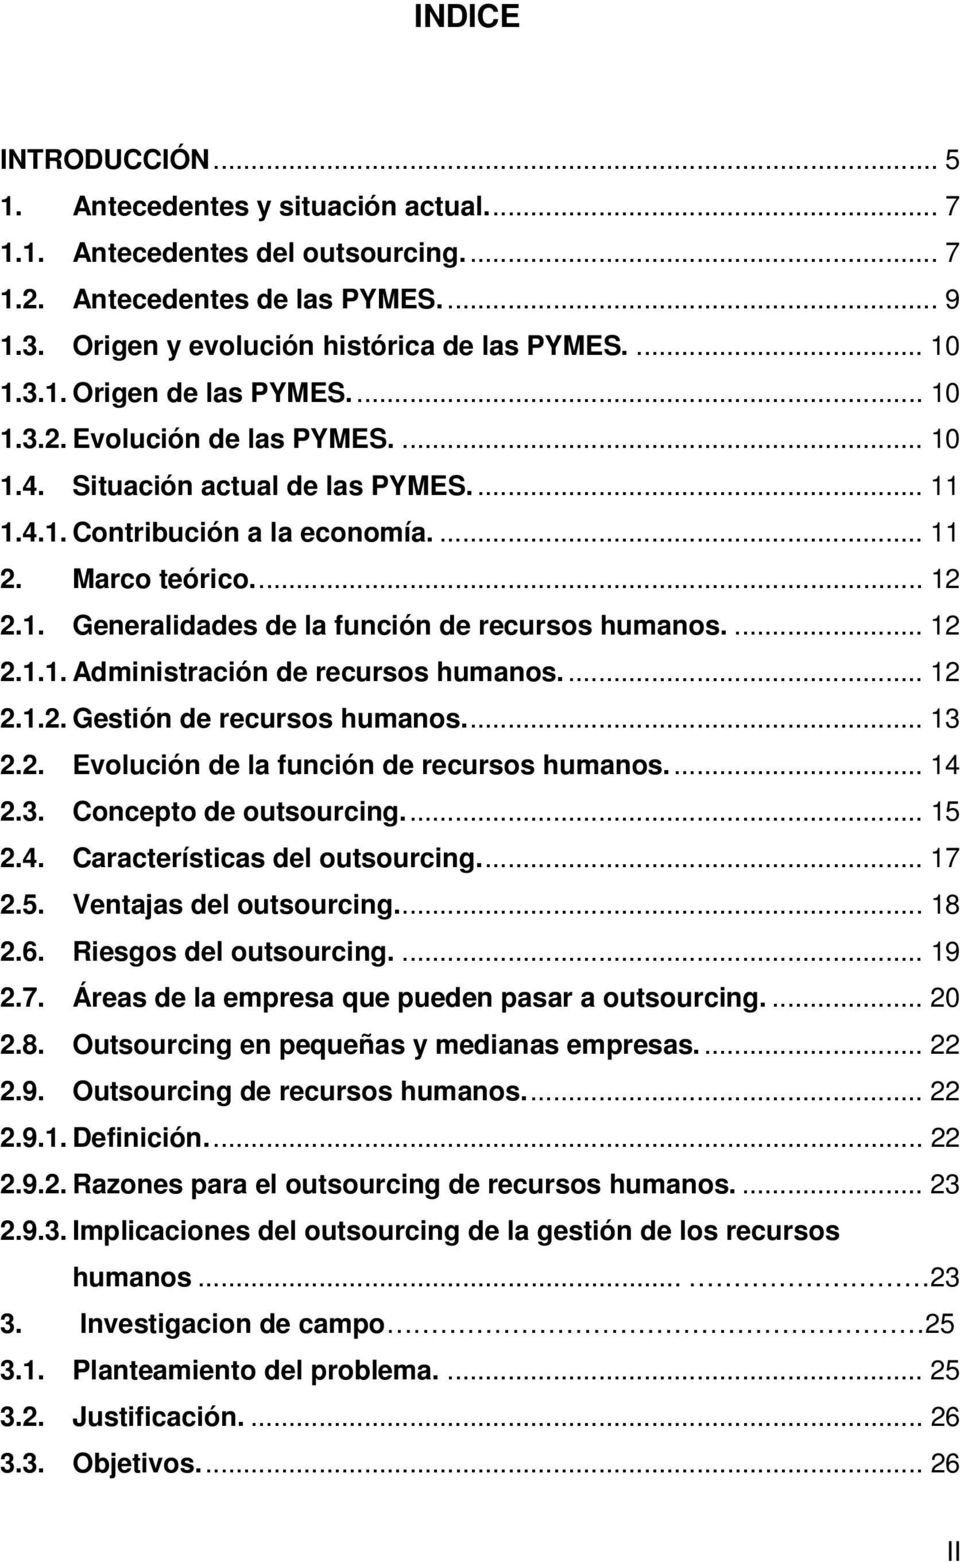 ... 12 2.1.1. Administración de recursos humanos.... 12 2.1.2. Gestión de recursos humanos.... 13 2.2. Evolución de la función de recursos humanos.... 14 2.3. Concepto de outsourcing.... 15 2.4. Características del outsourcing.